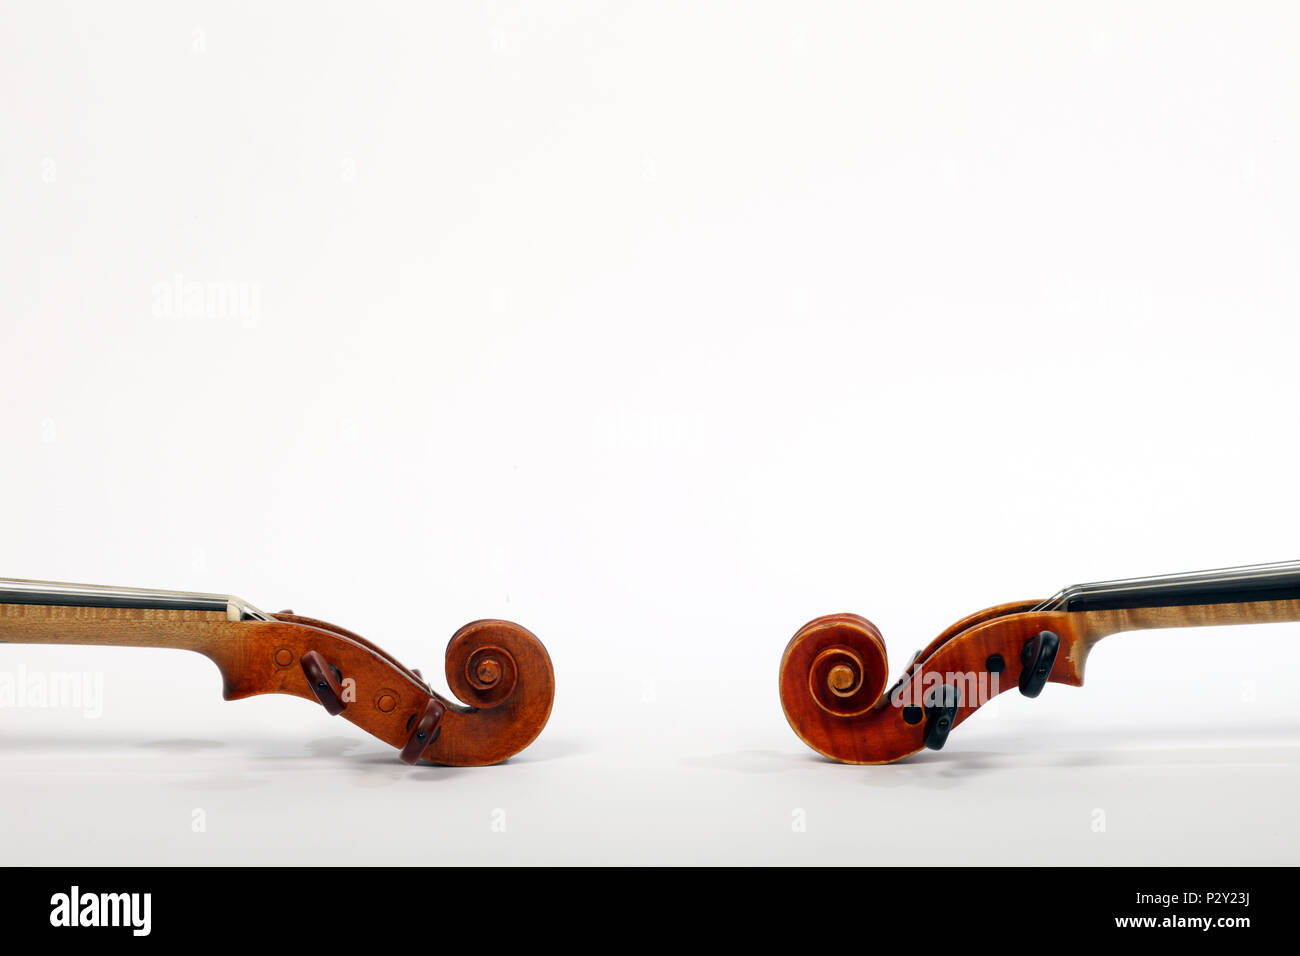 Generisch, Nahaufnahme der Violinen und Teile von Geigen - Hals